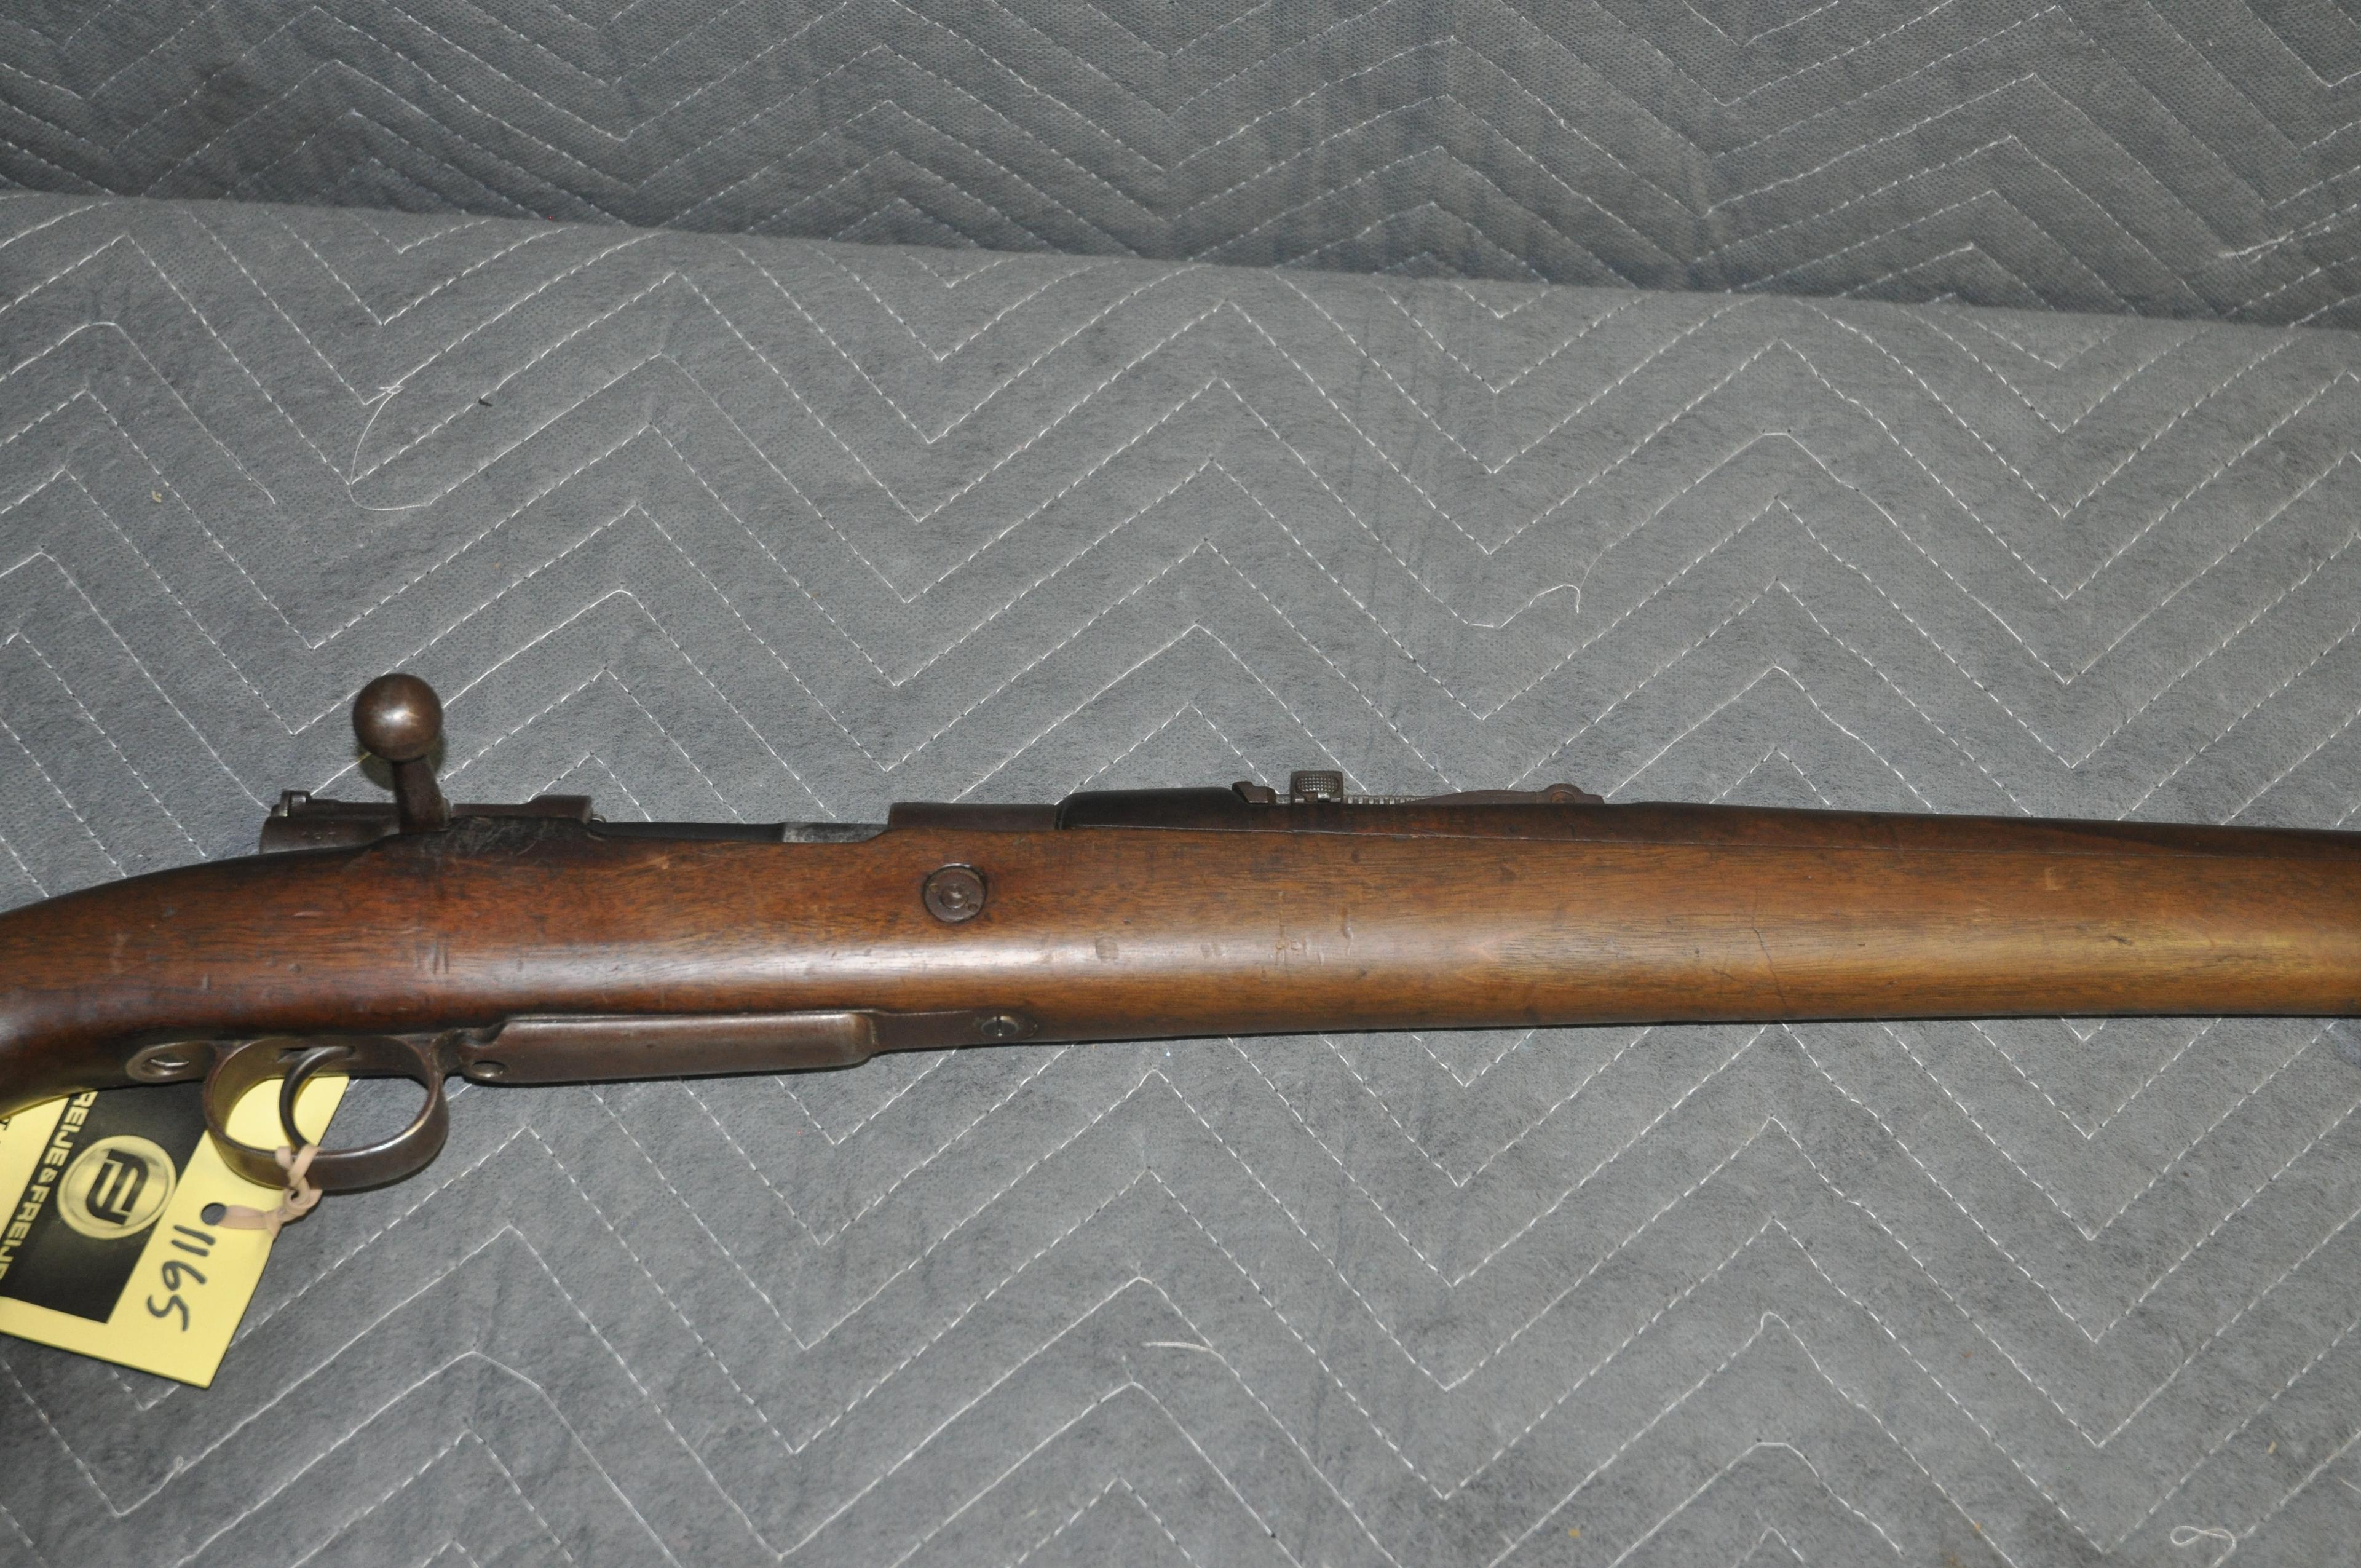 Turkish Mauser